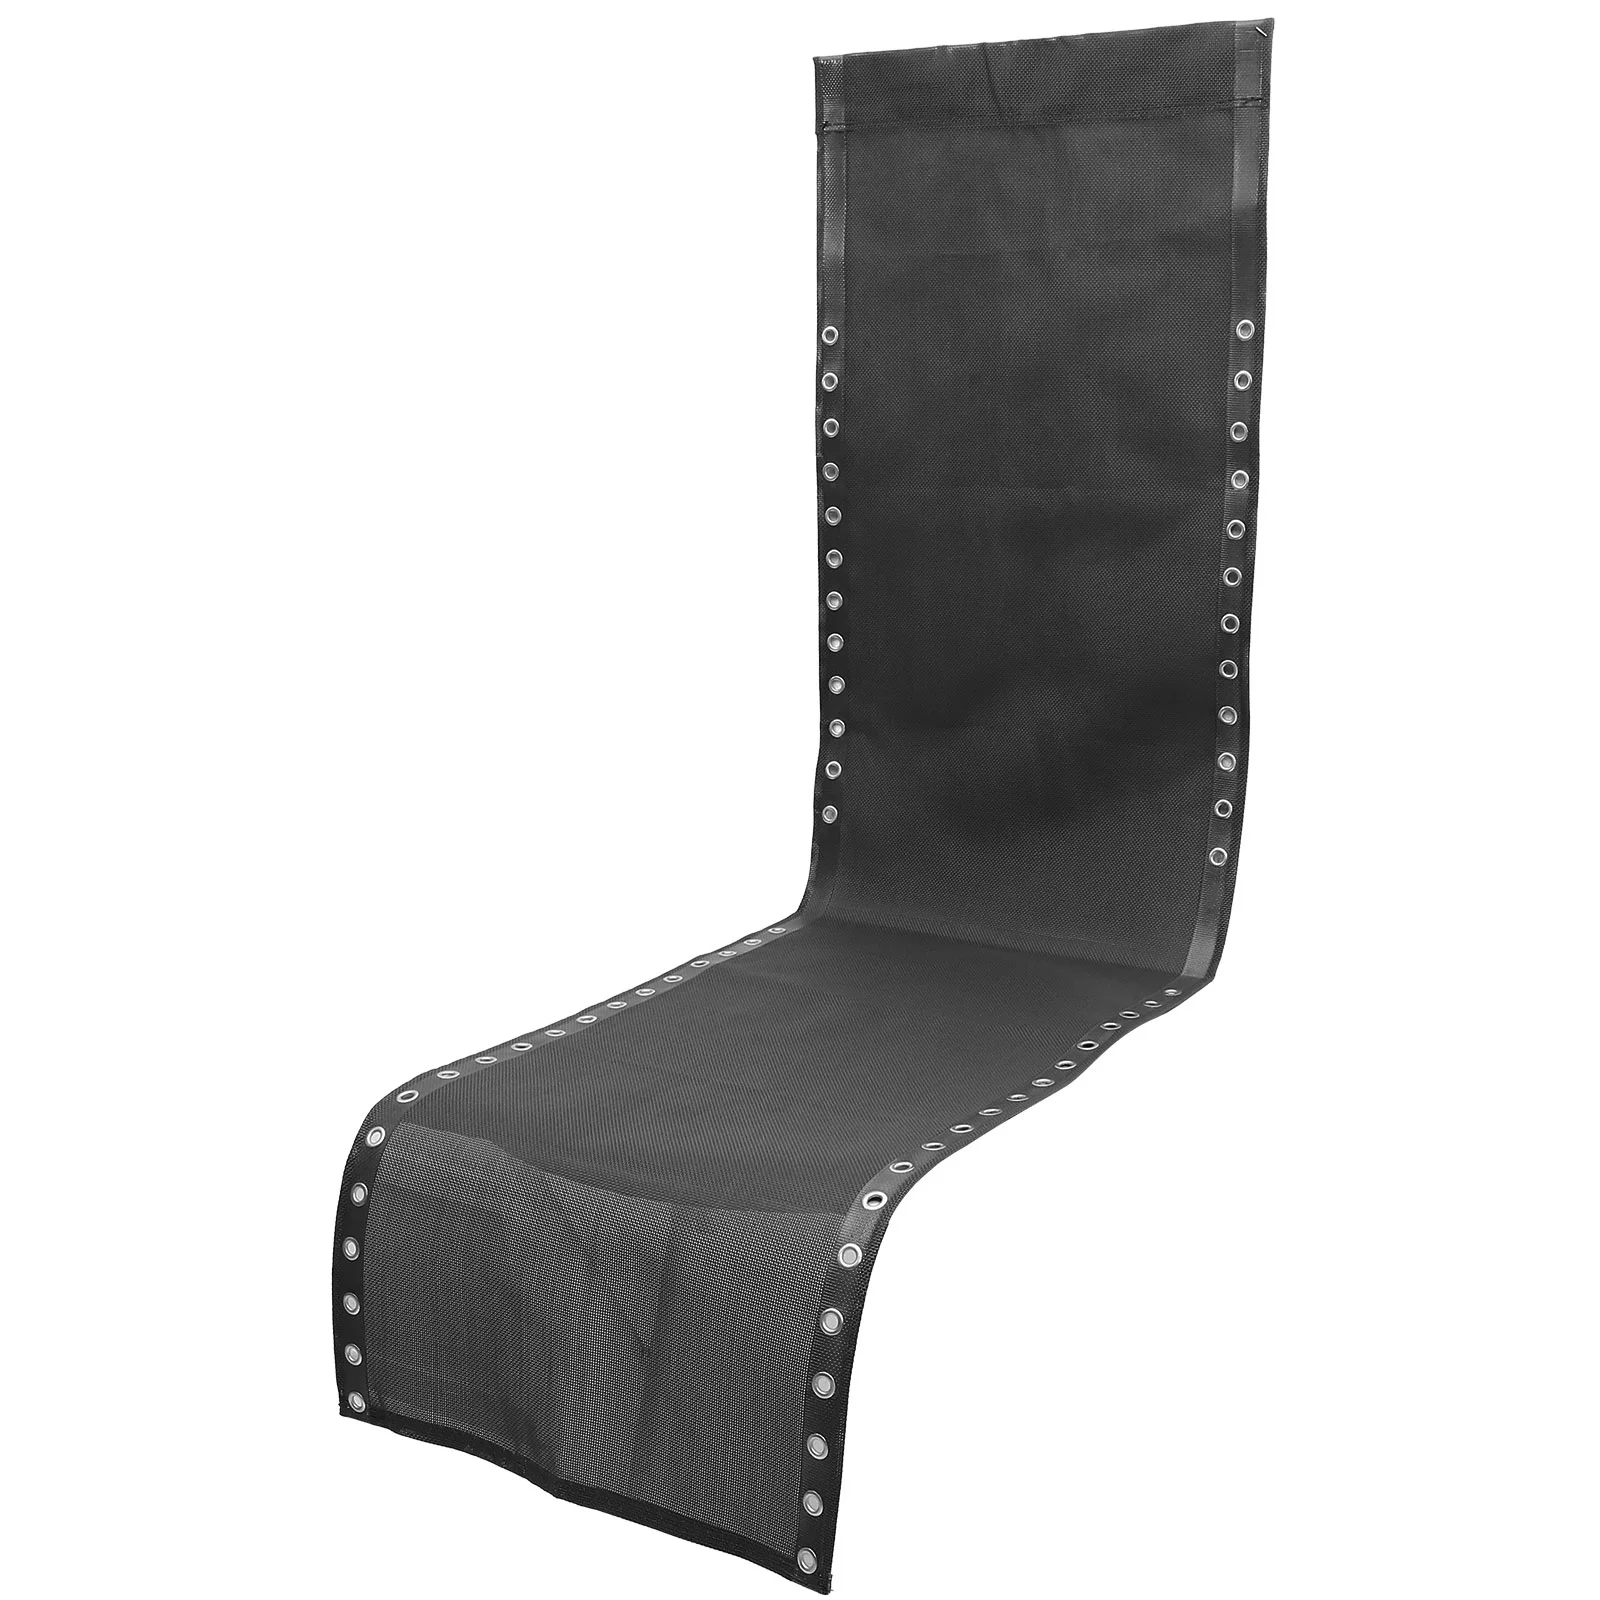 1 комплект сменной ткани для патио, износостойкий тканевый канат для шезлонга, набор принадлежностей для стульев 5